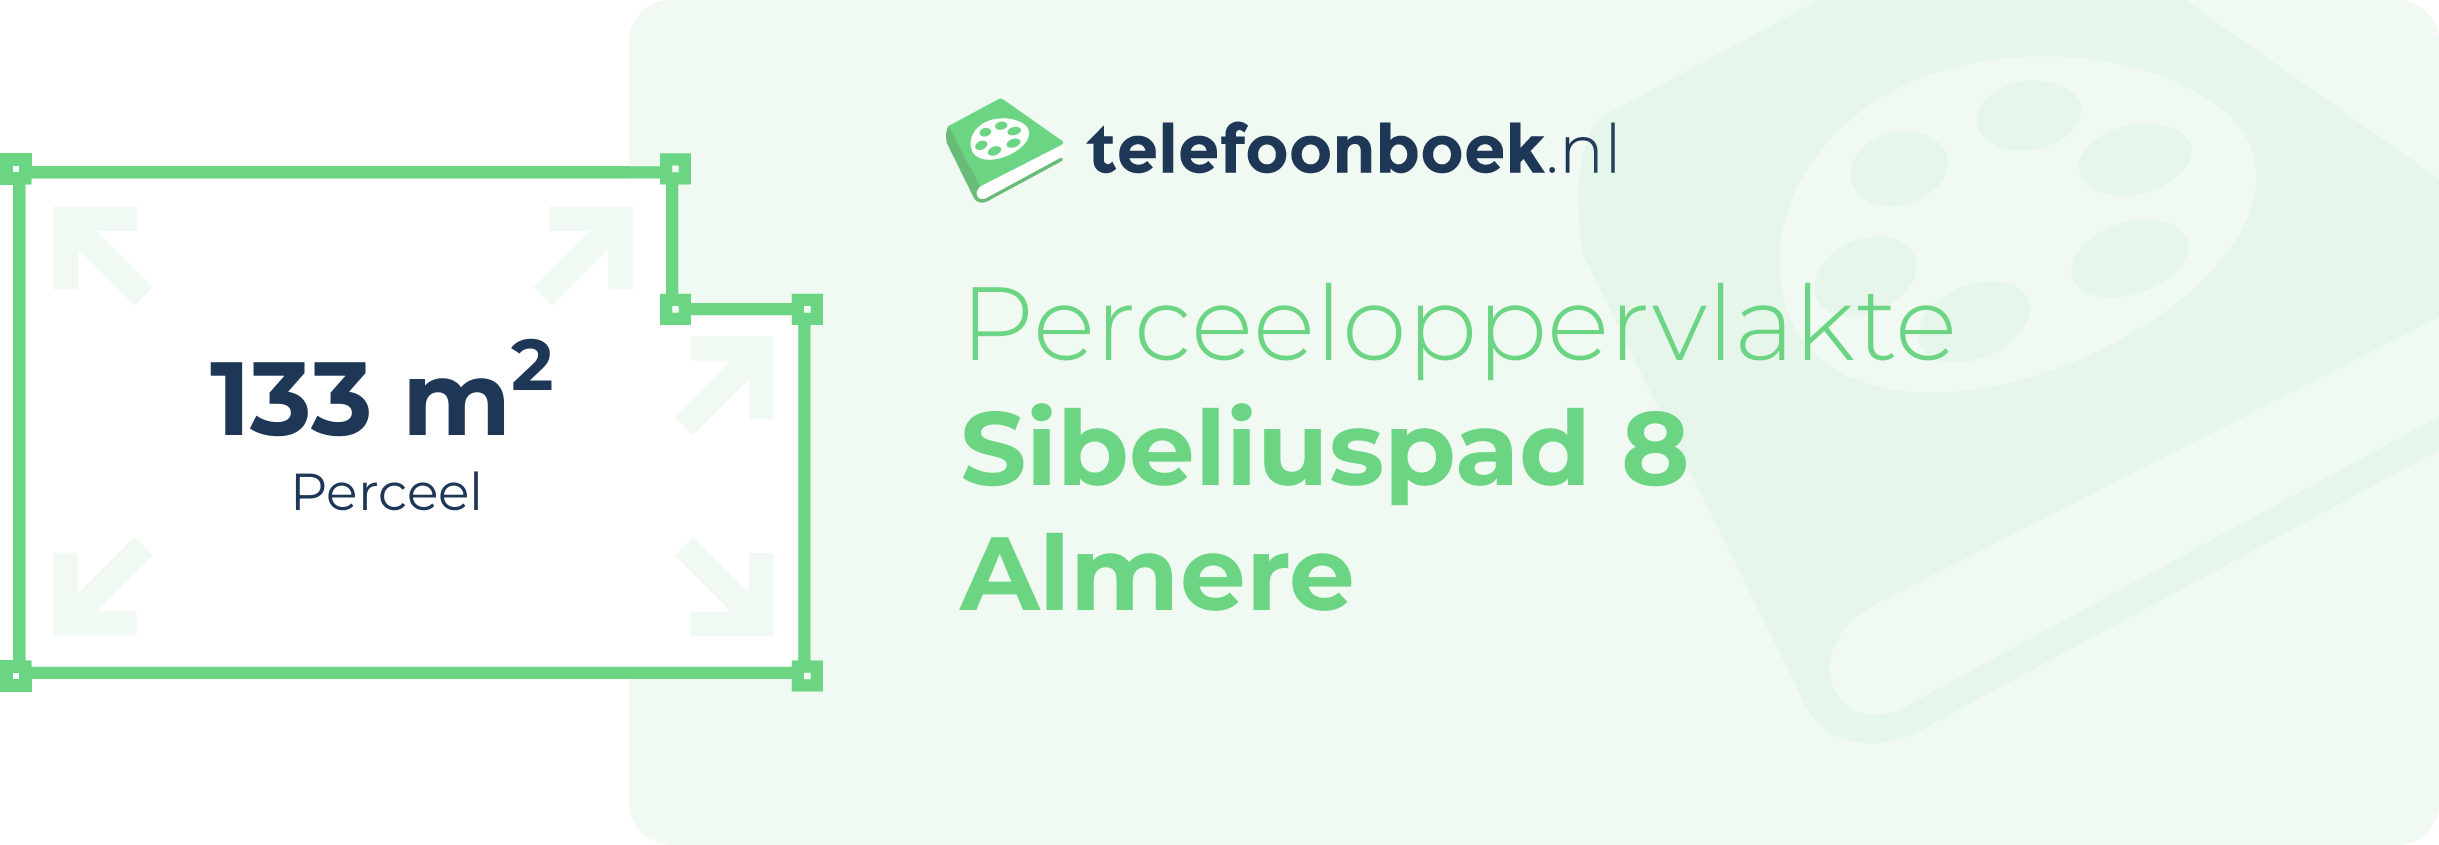 Perceeloppervlakte Sibeliuspad 8 Almere